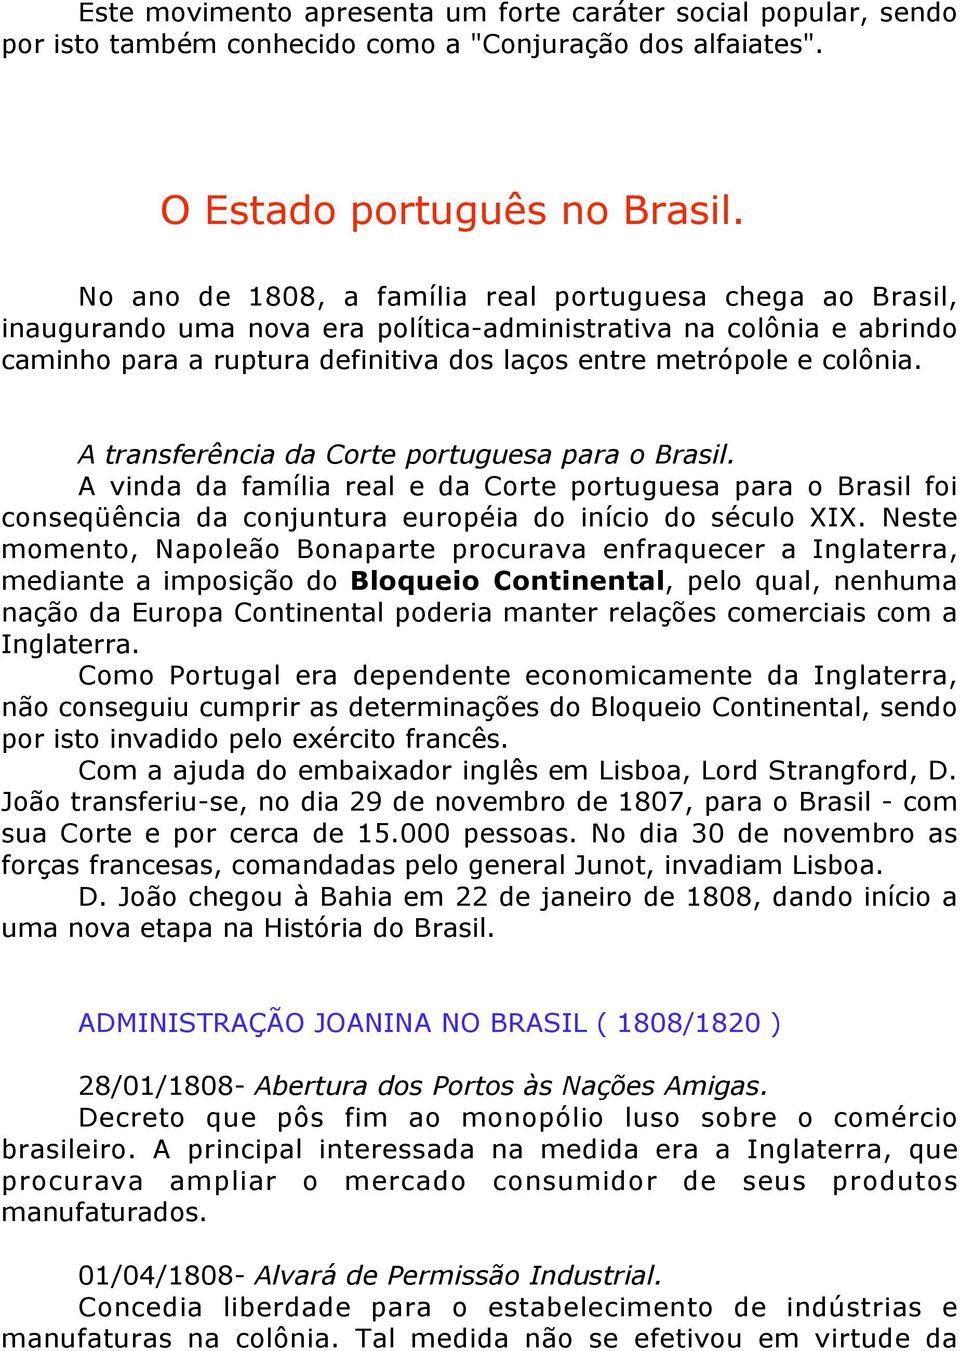 A transferência da Corte portuguesa para o Brasil. A vinda da família real e da Corte portuguesa para o Brasil foi conseqüência da conjuntura européia do início do século XIX.